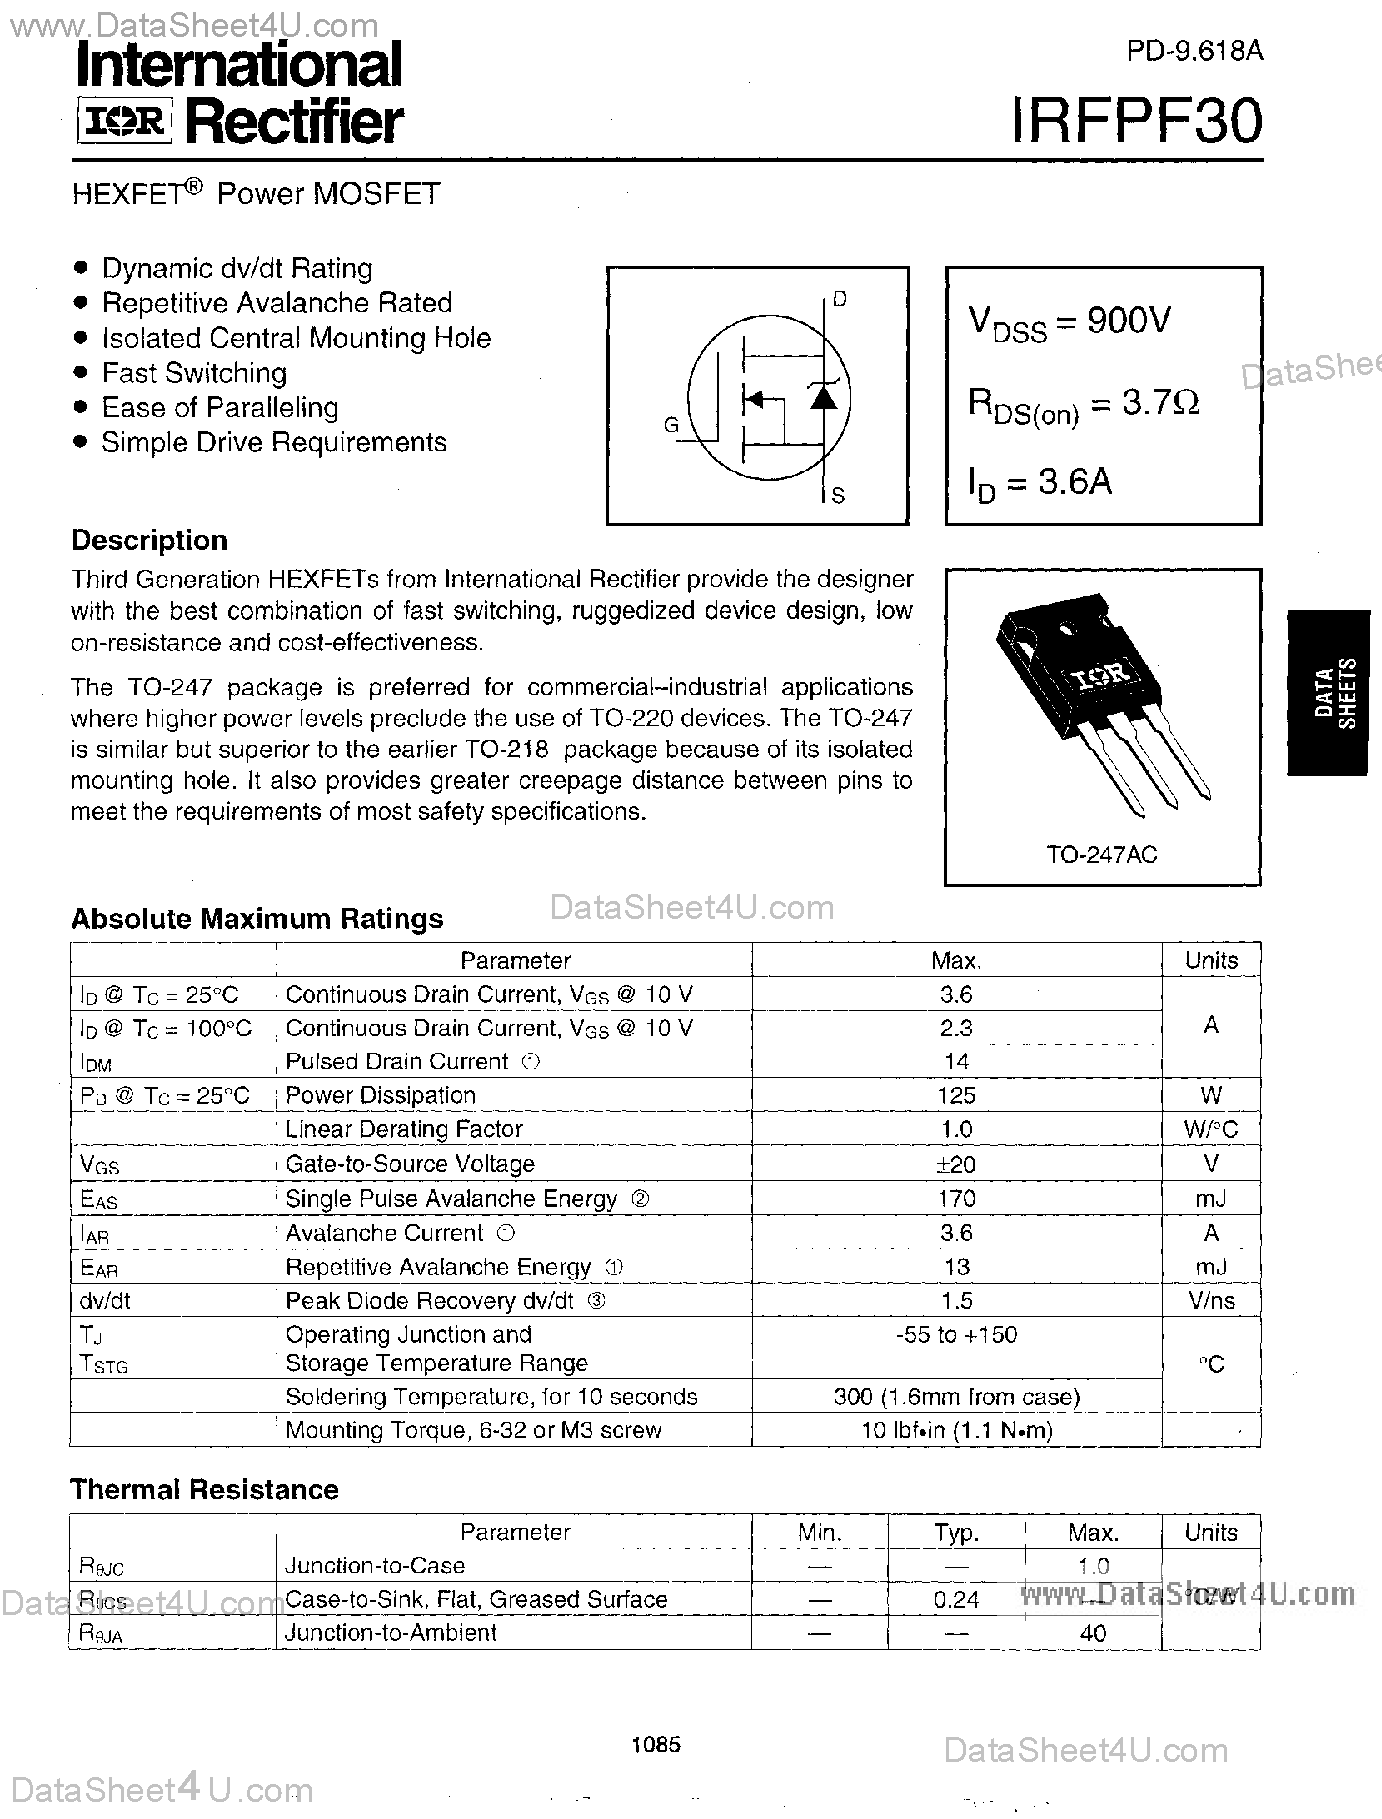 Даташит IRFPF30 - Power MOSFET страница 1